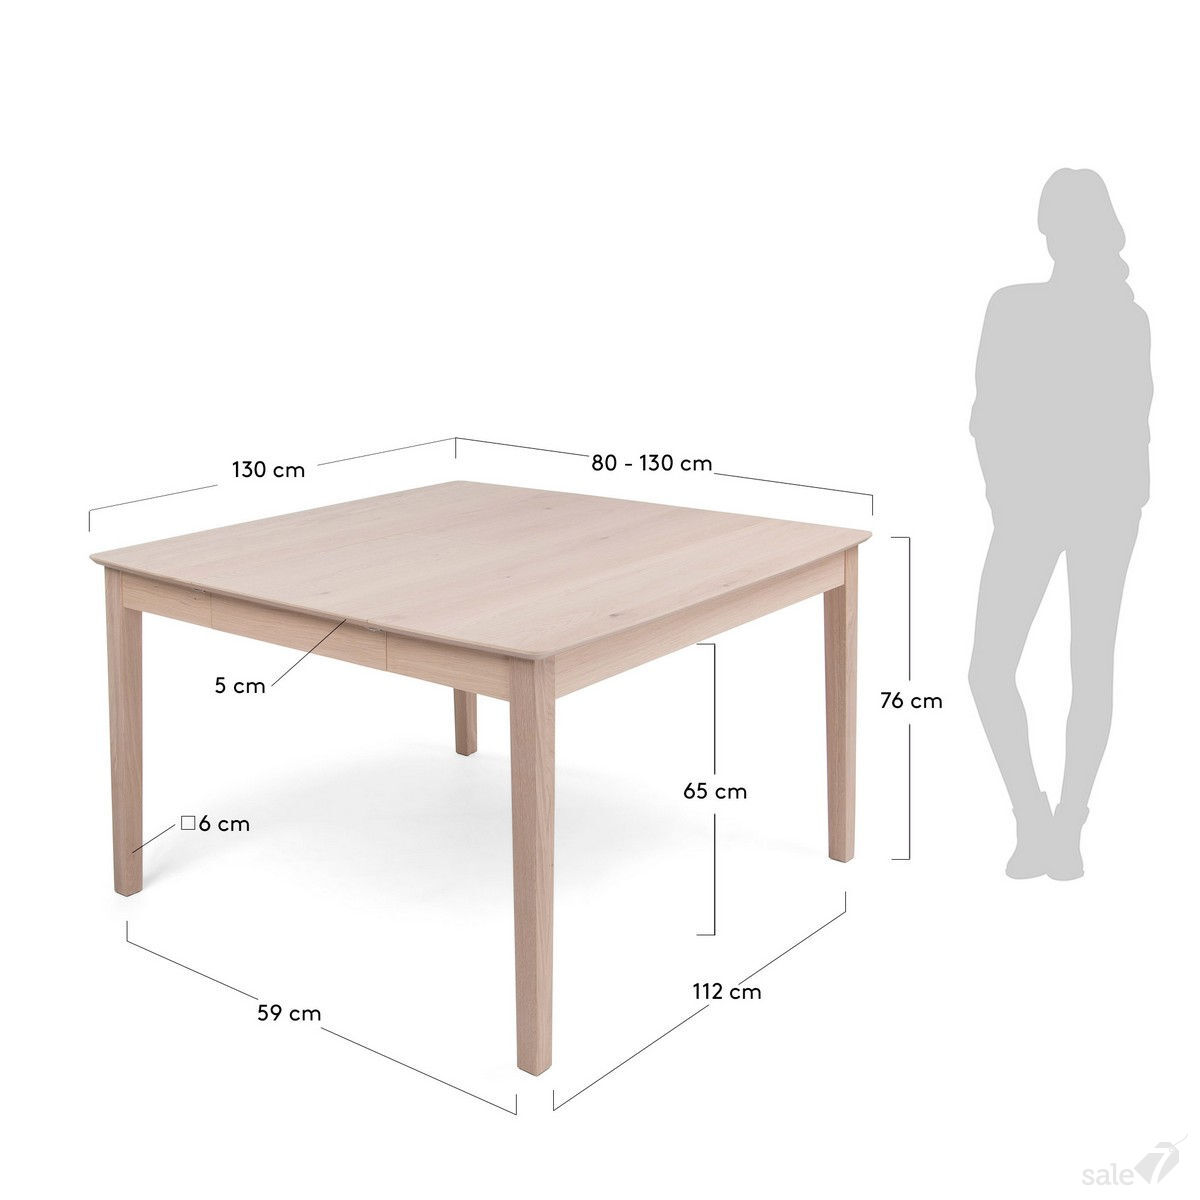 Стол высотой 90 см. Высота обеденного стола стандарт. Размер столешницы кухонного стола стандарт. Ширина обеденного стола стандарт. Размер кухонного стола стандарт высота.